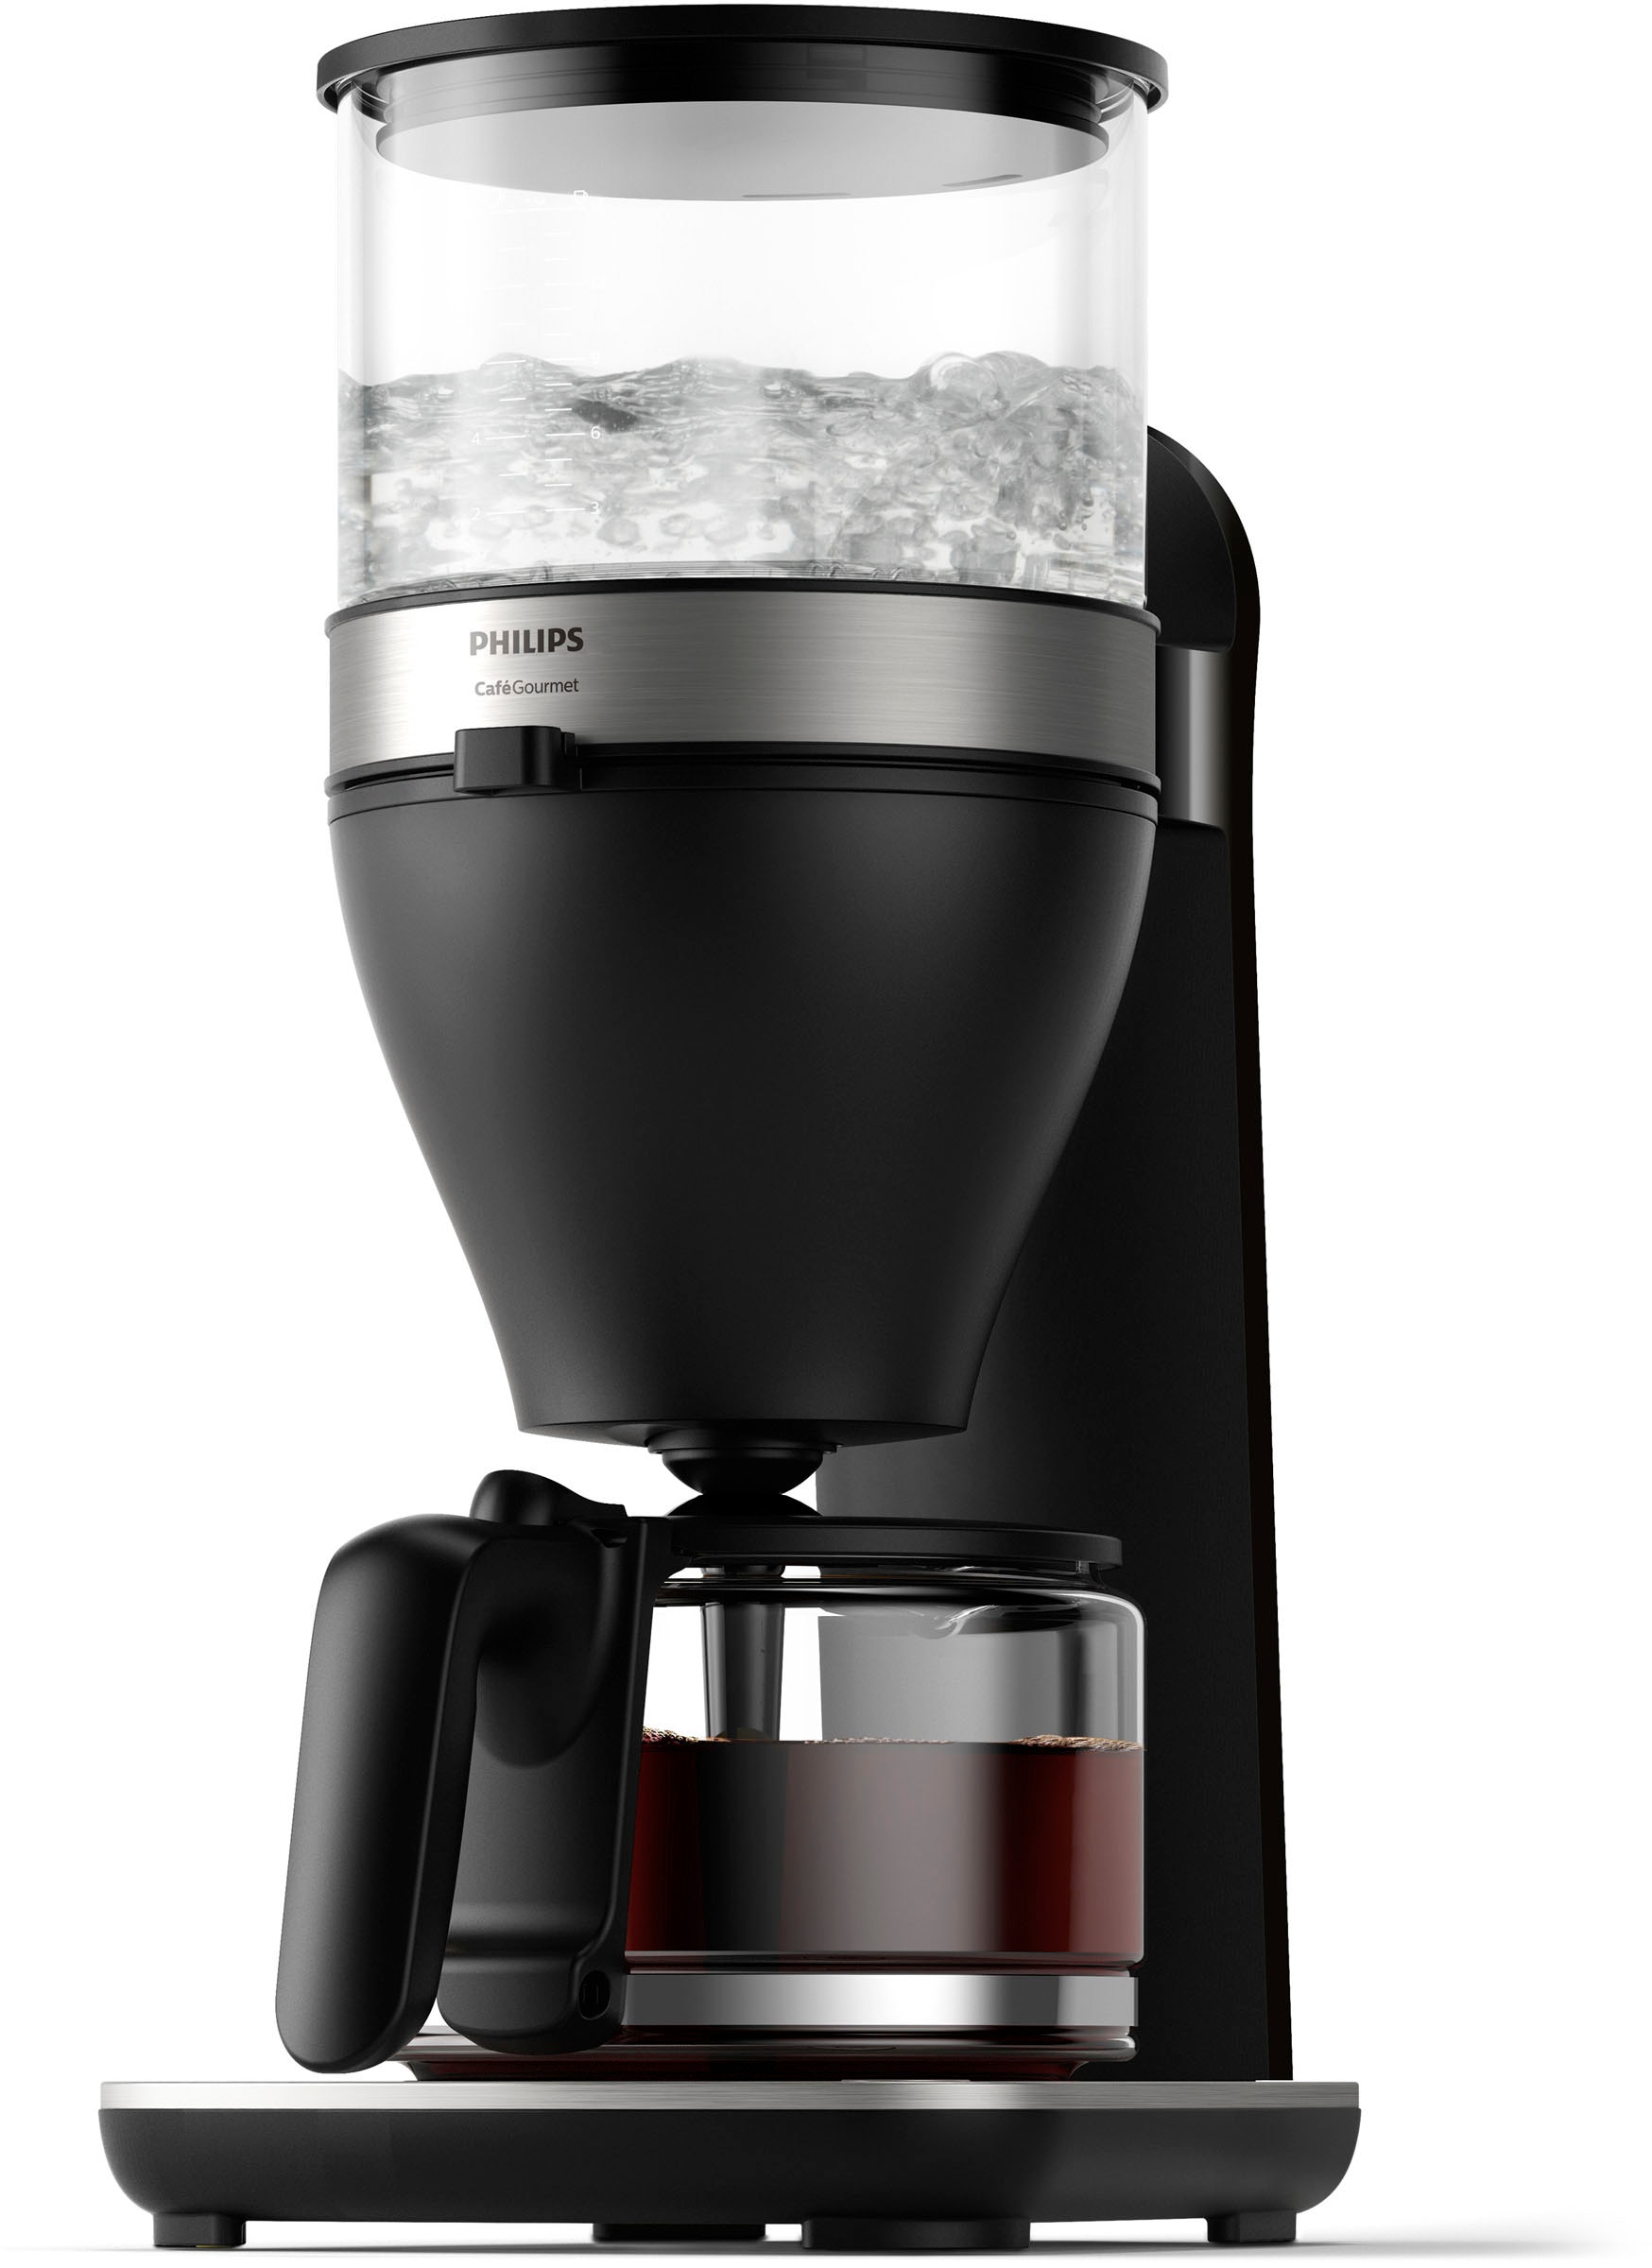 Filterkaffeemaschine jetzt HD5416/60« Philips Gourmet bestellen bei OTTO »Café